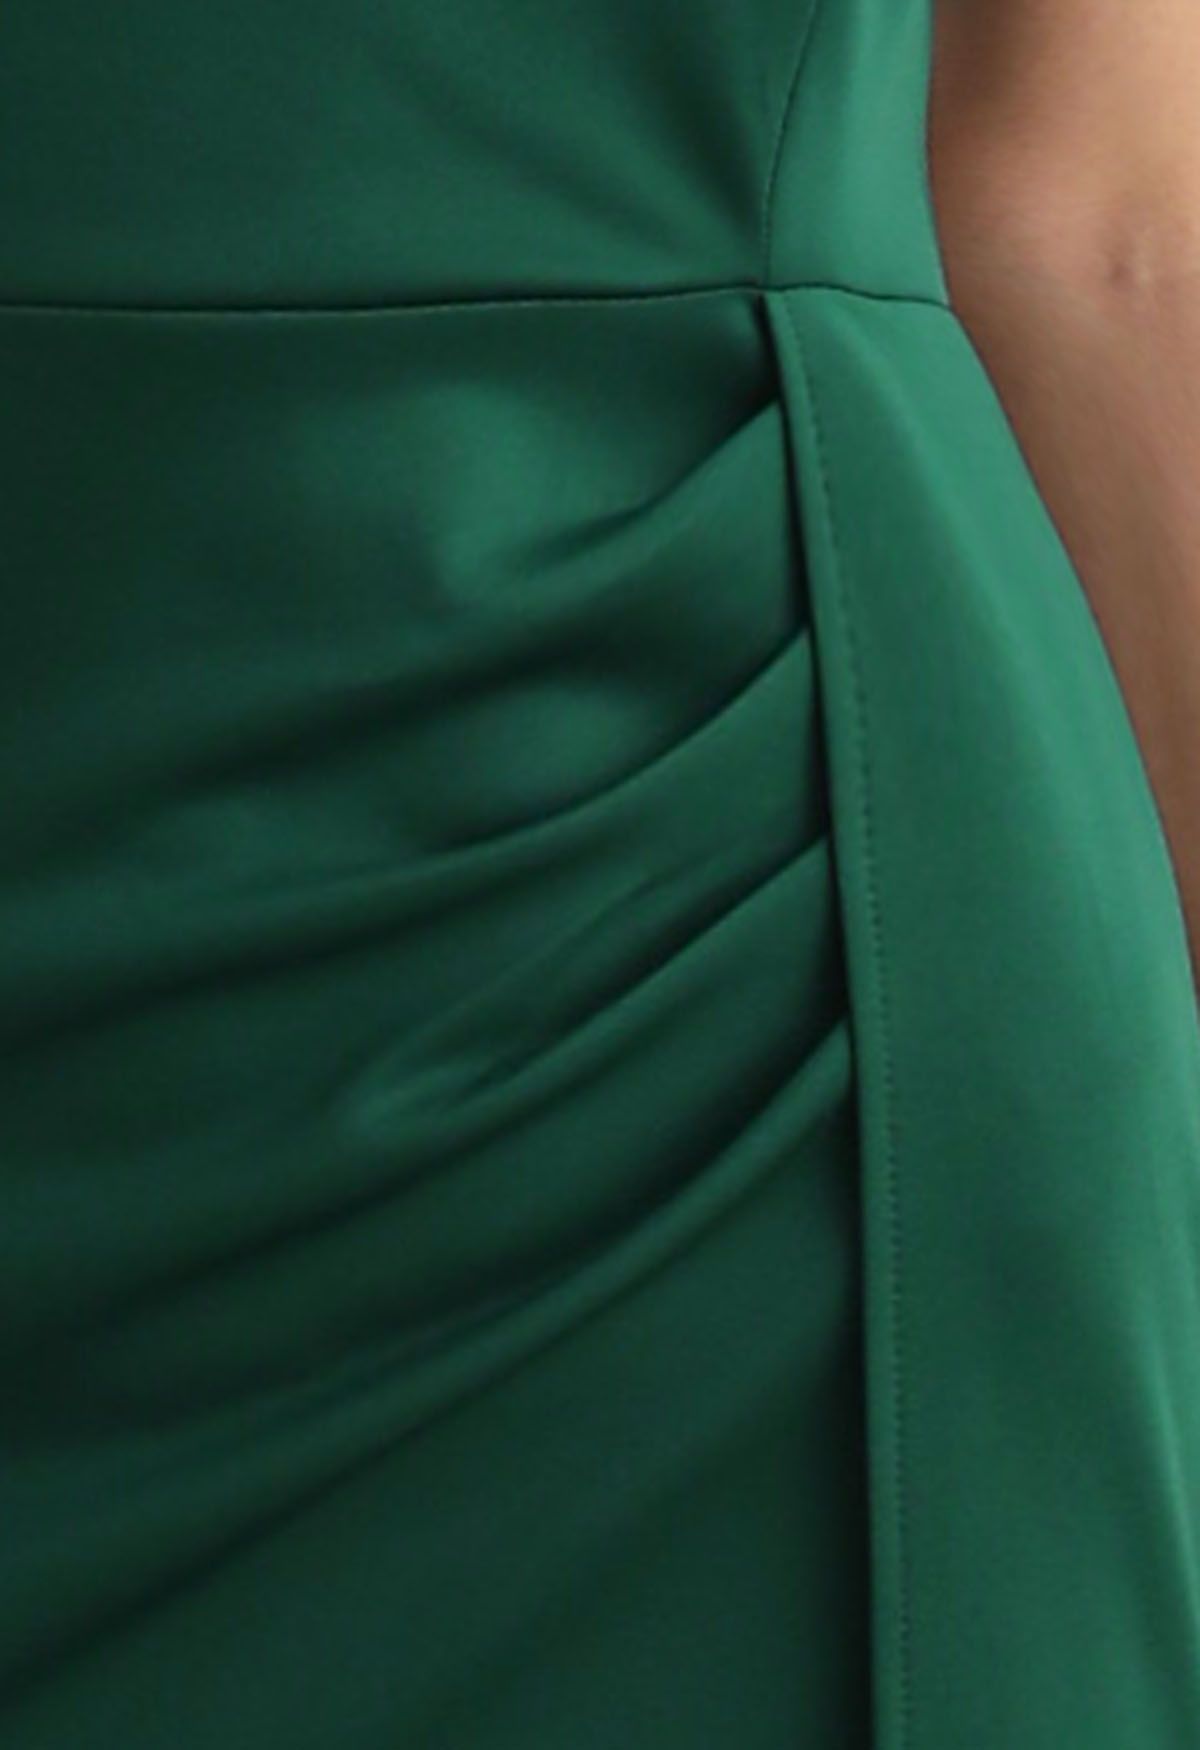 ريشة تريم واحد في الكتف ثوب حورية البحر باللون الأخضر الداكن